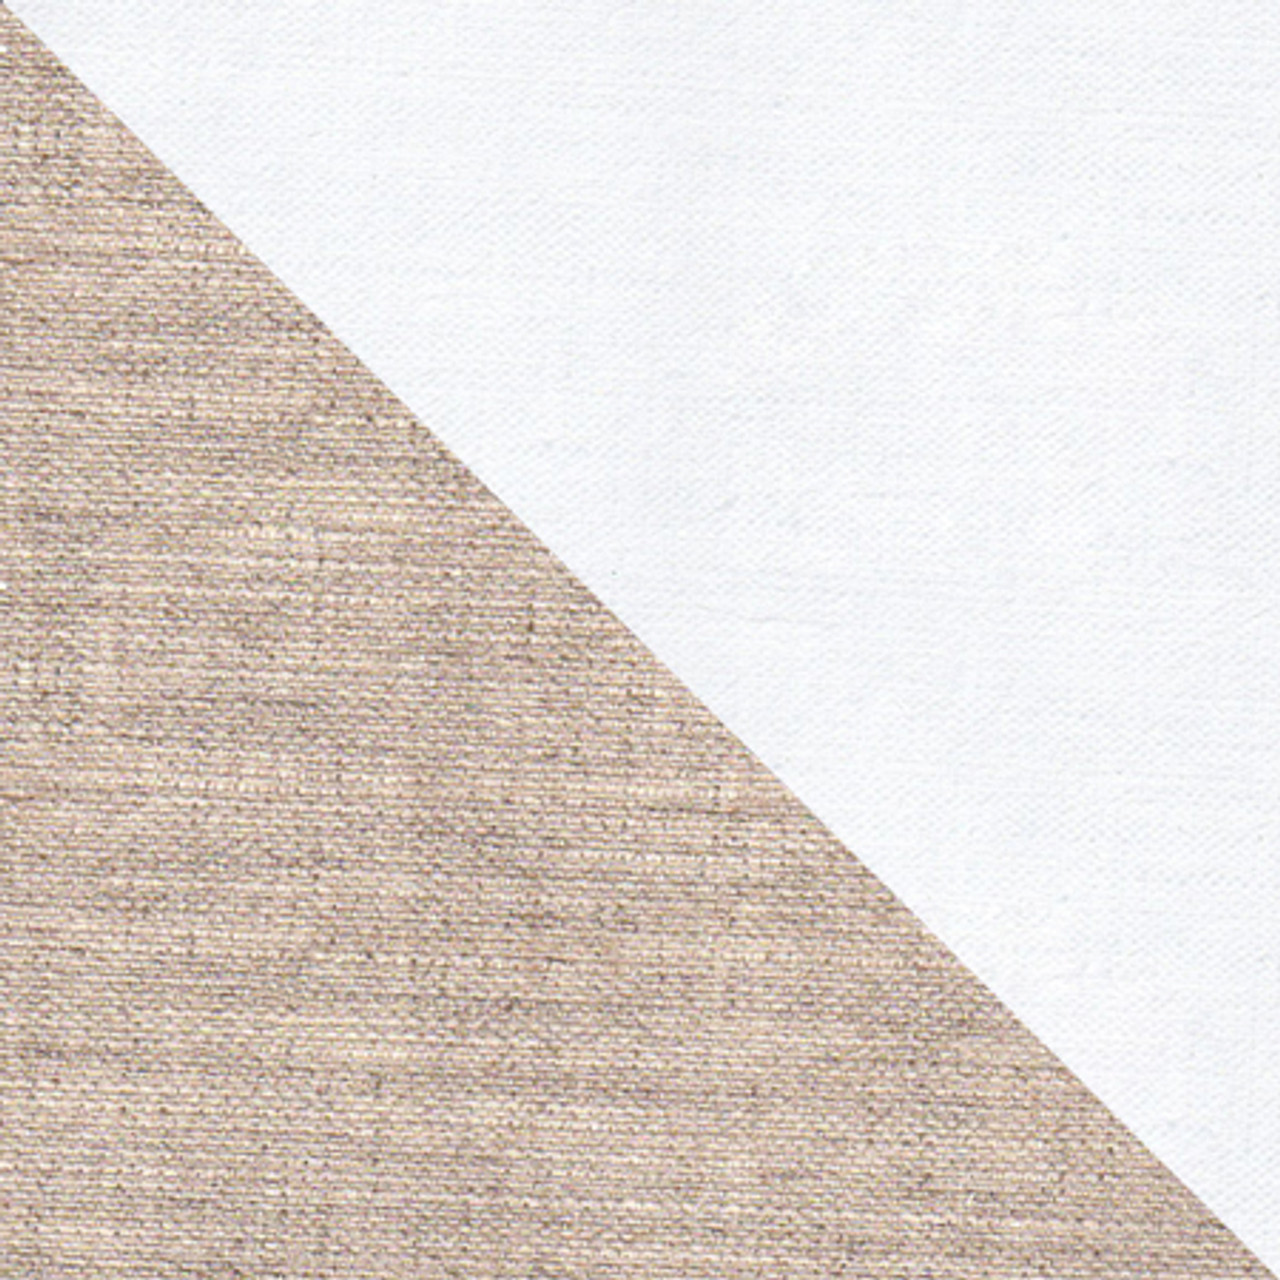 10 Oz Extra Fine ,Quadruple Primed 100% Linen Canvas-Unprimed side(bottom) / Primed side (top).